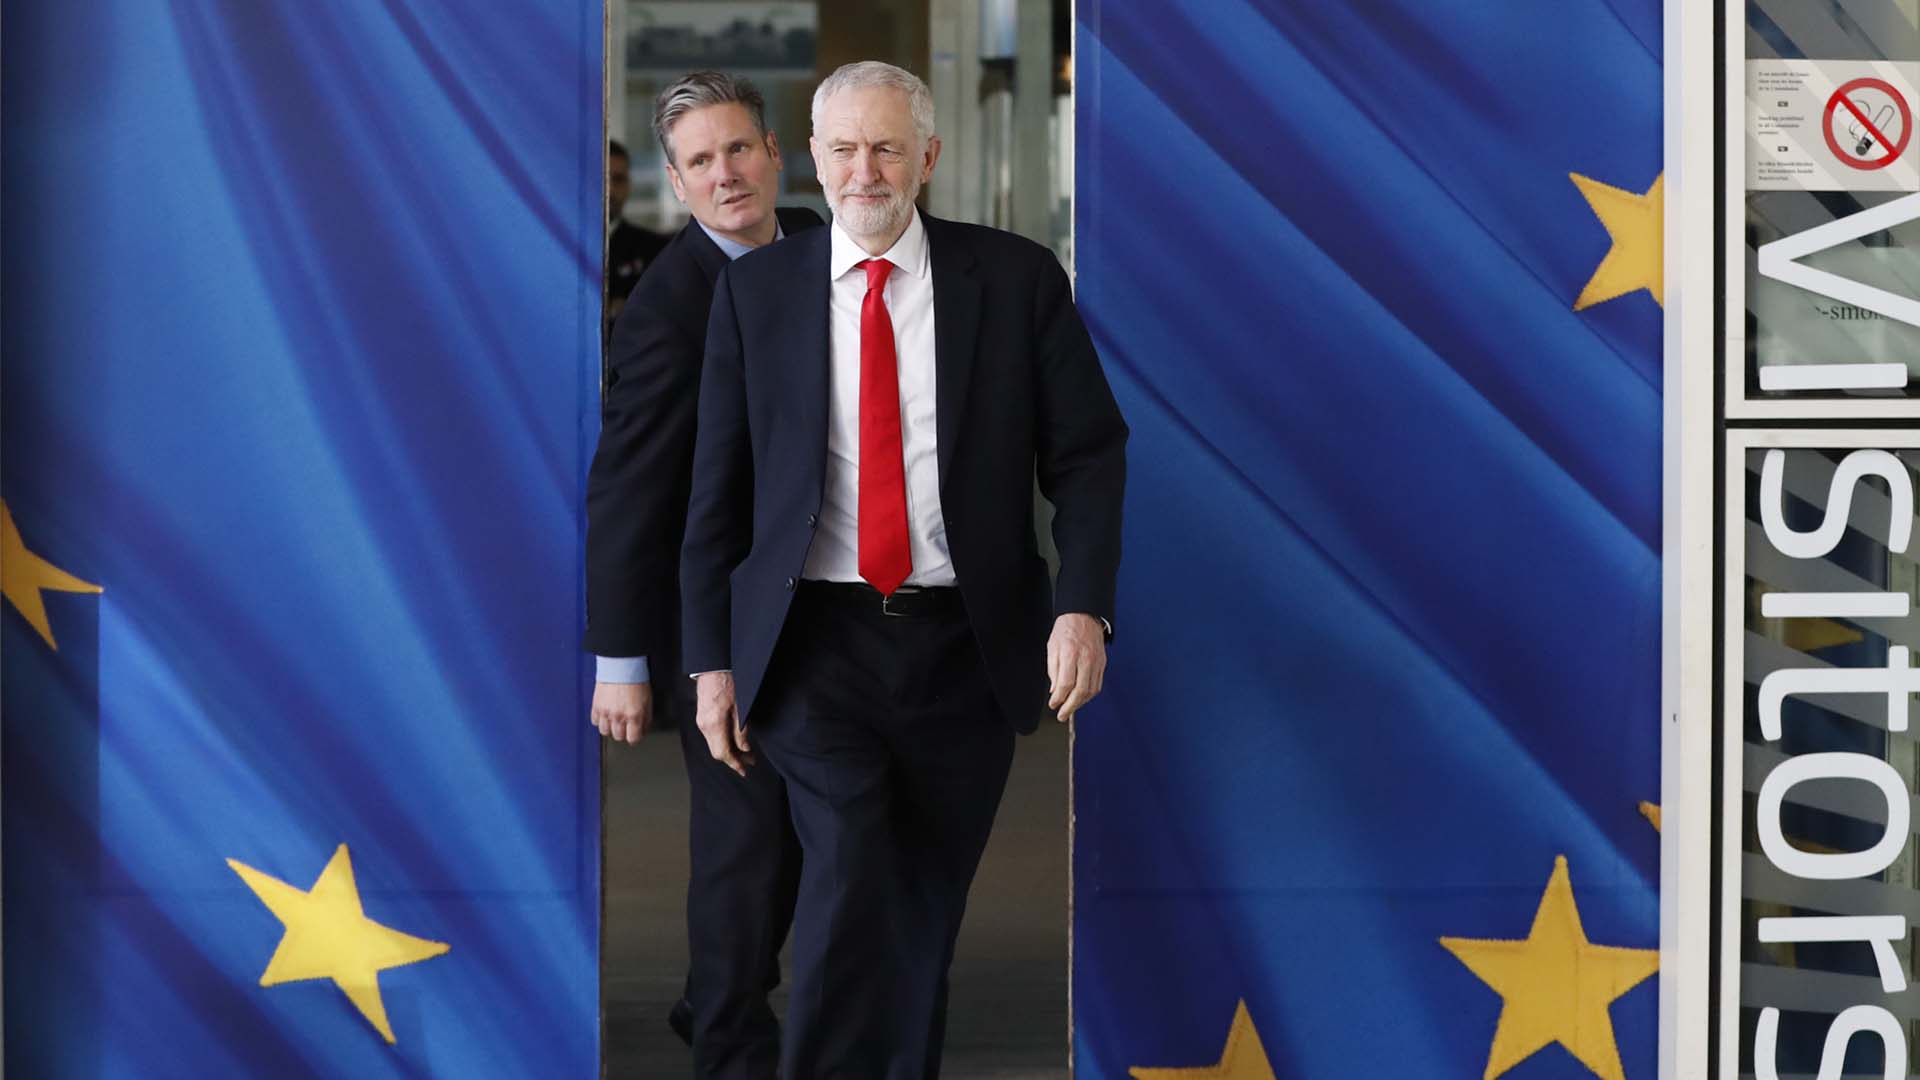 La oposición laborista rompe la negociación sobre el Brexit con el Gobierno de May